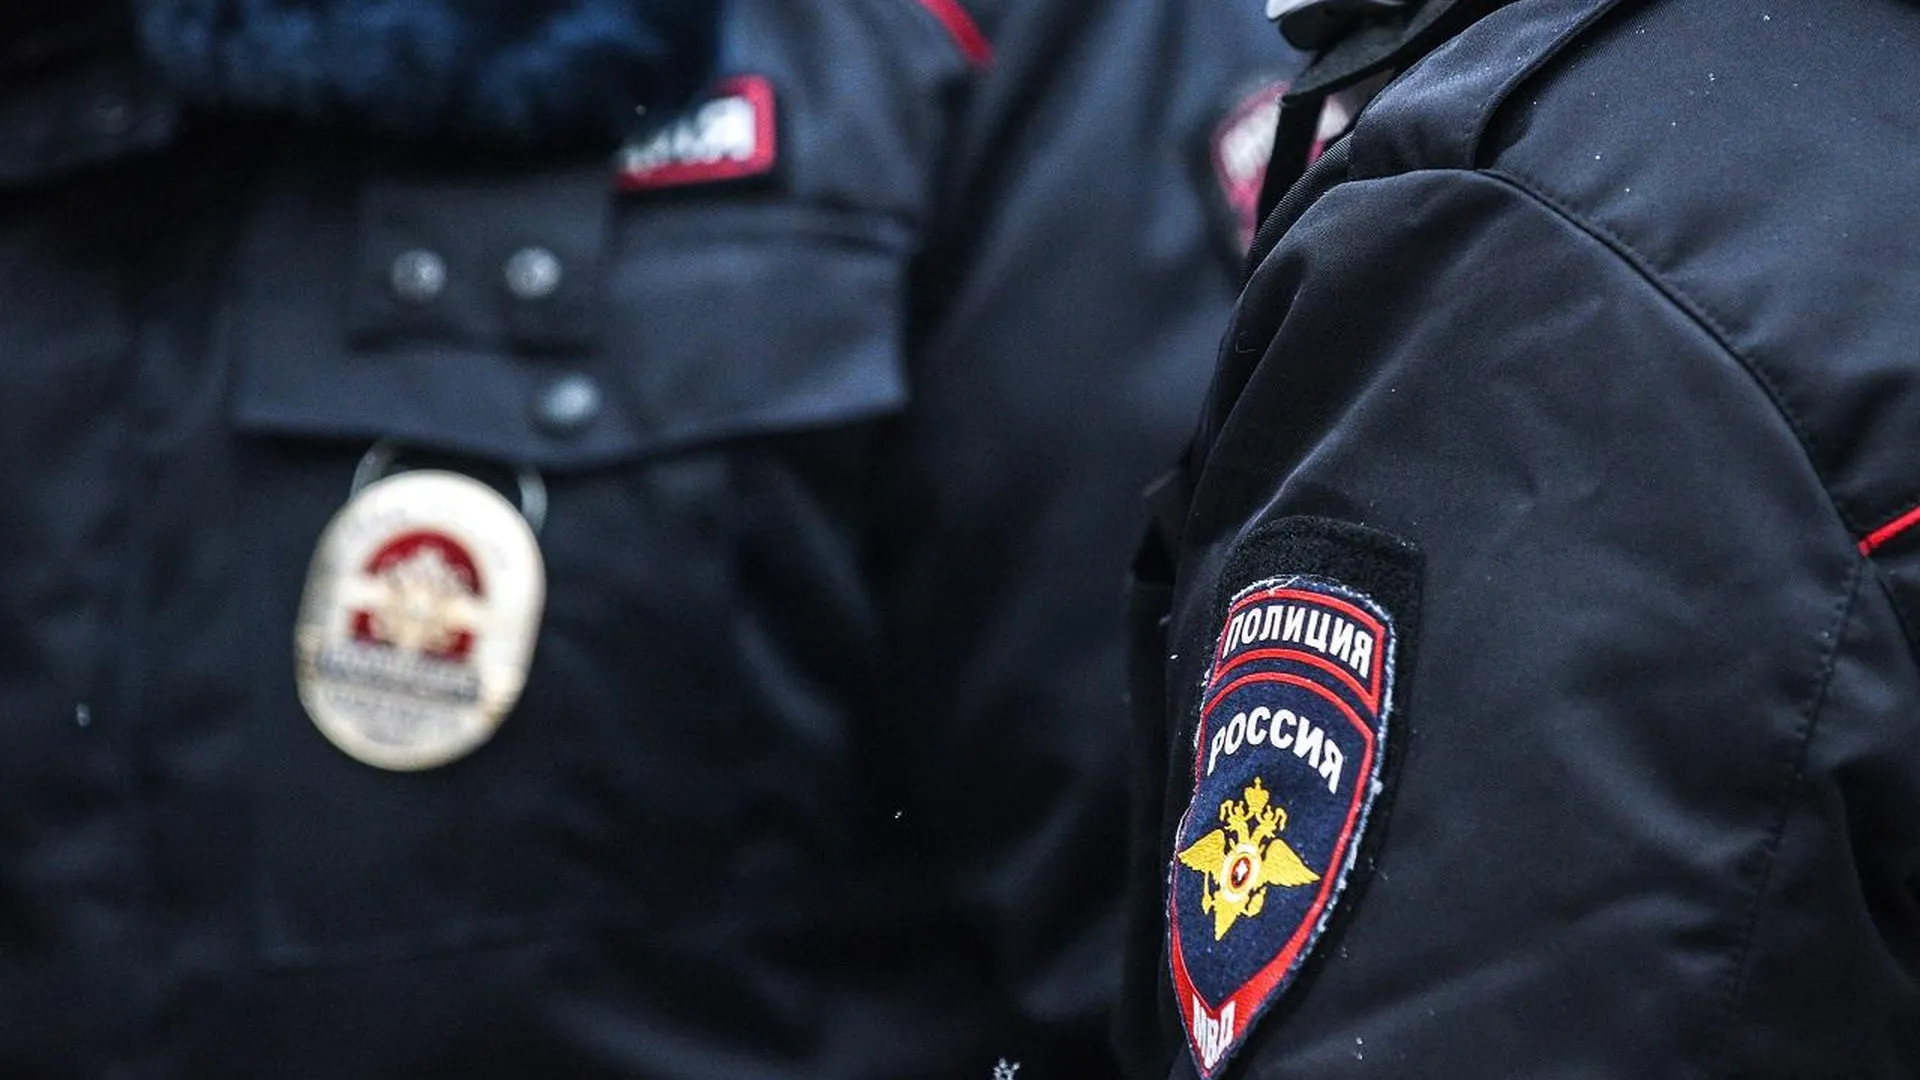 Двое жителей Подмосковья похитили из магазина средства гигиены на восемь тысяч рублей